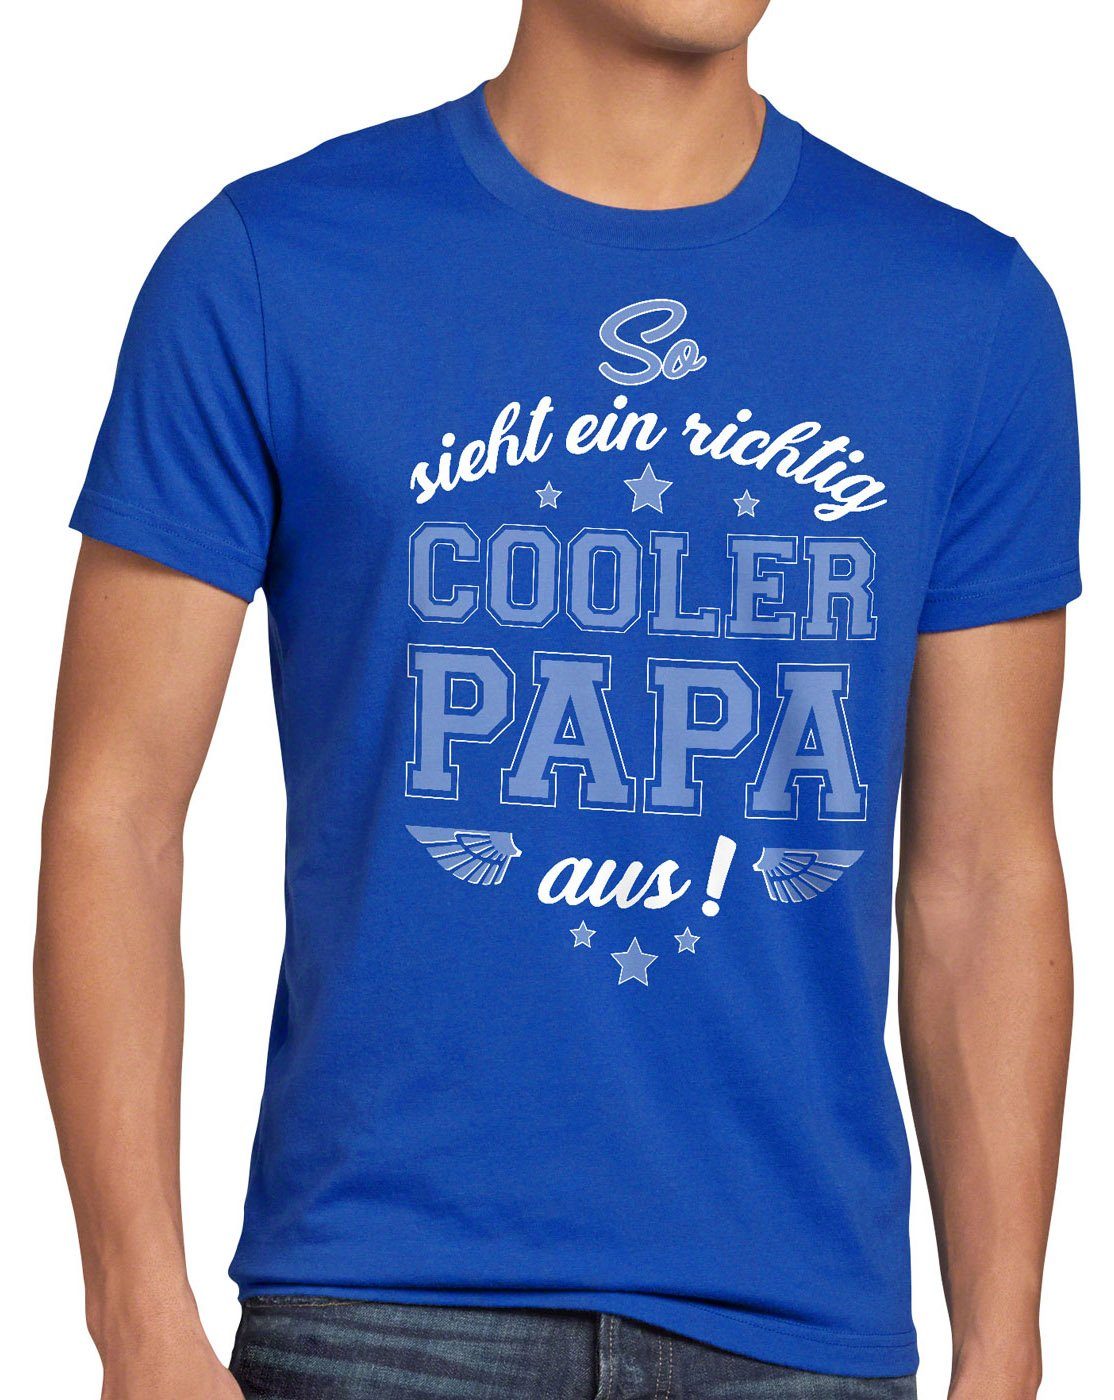 style3 Print-Shirt Herren T-Shirt Cooler Sohn Geburtstag blau Vater Vatertag Fun Spruch Dad Papa Tochter